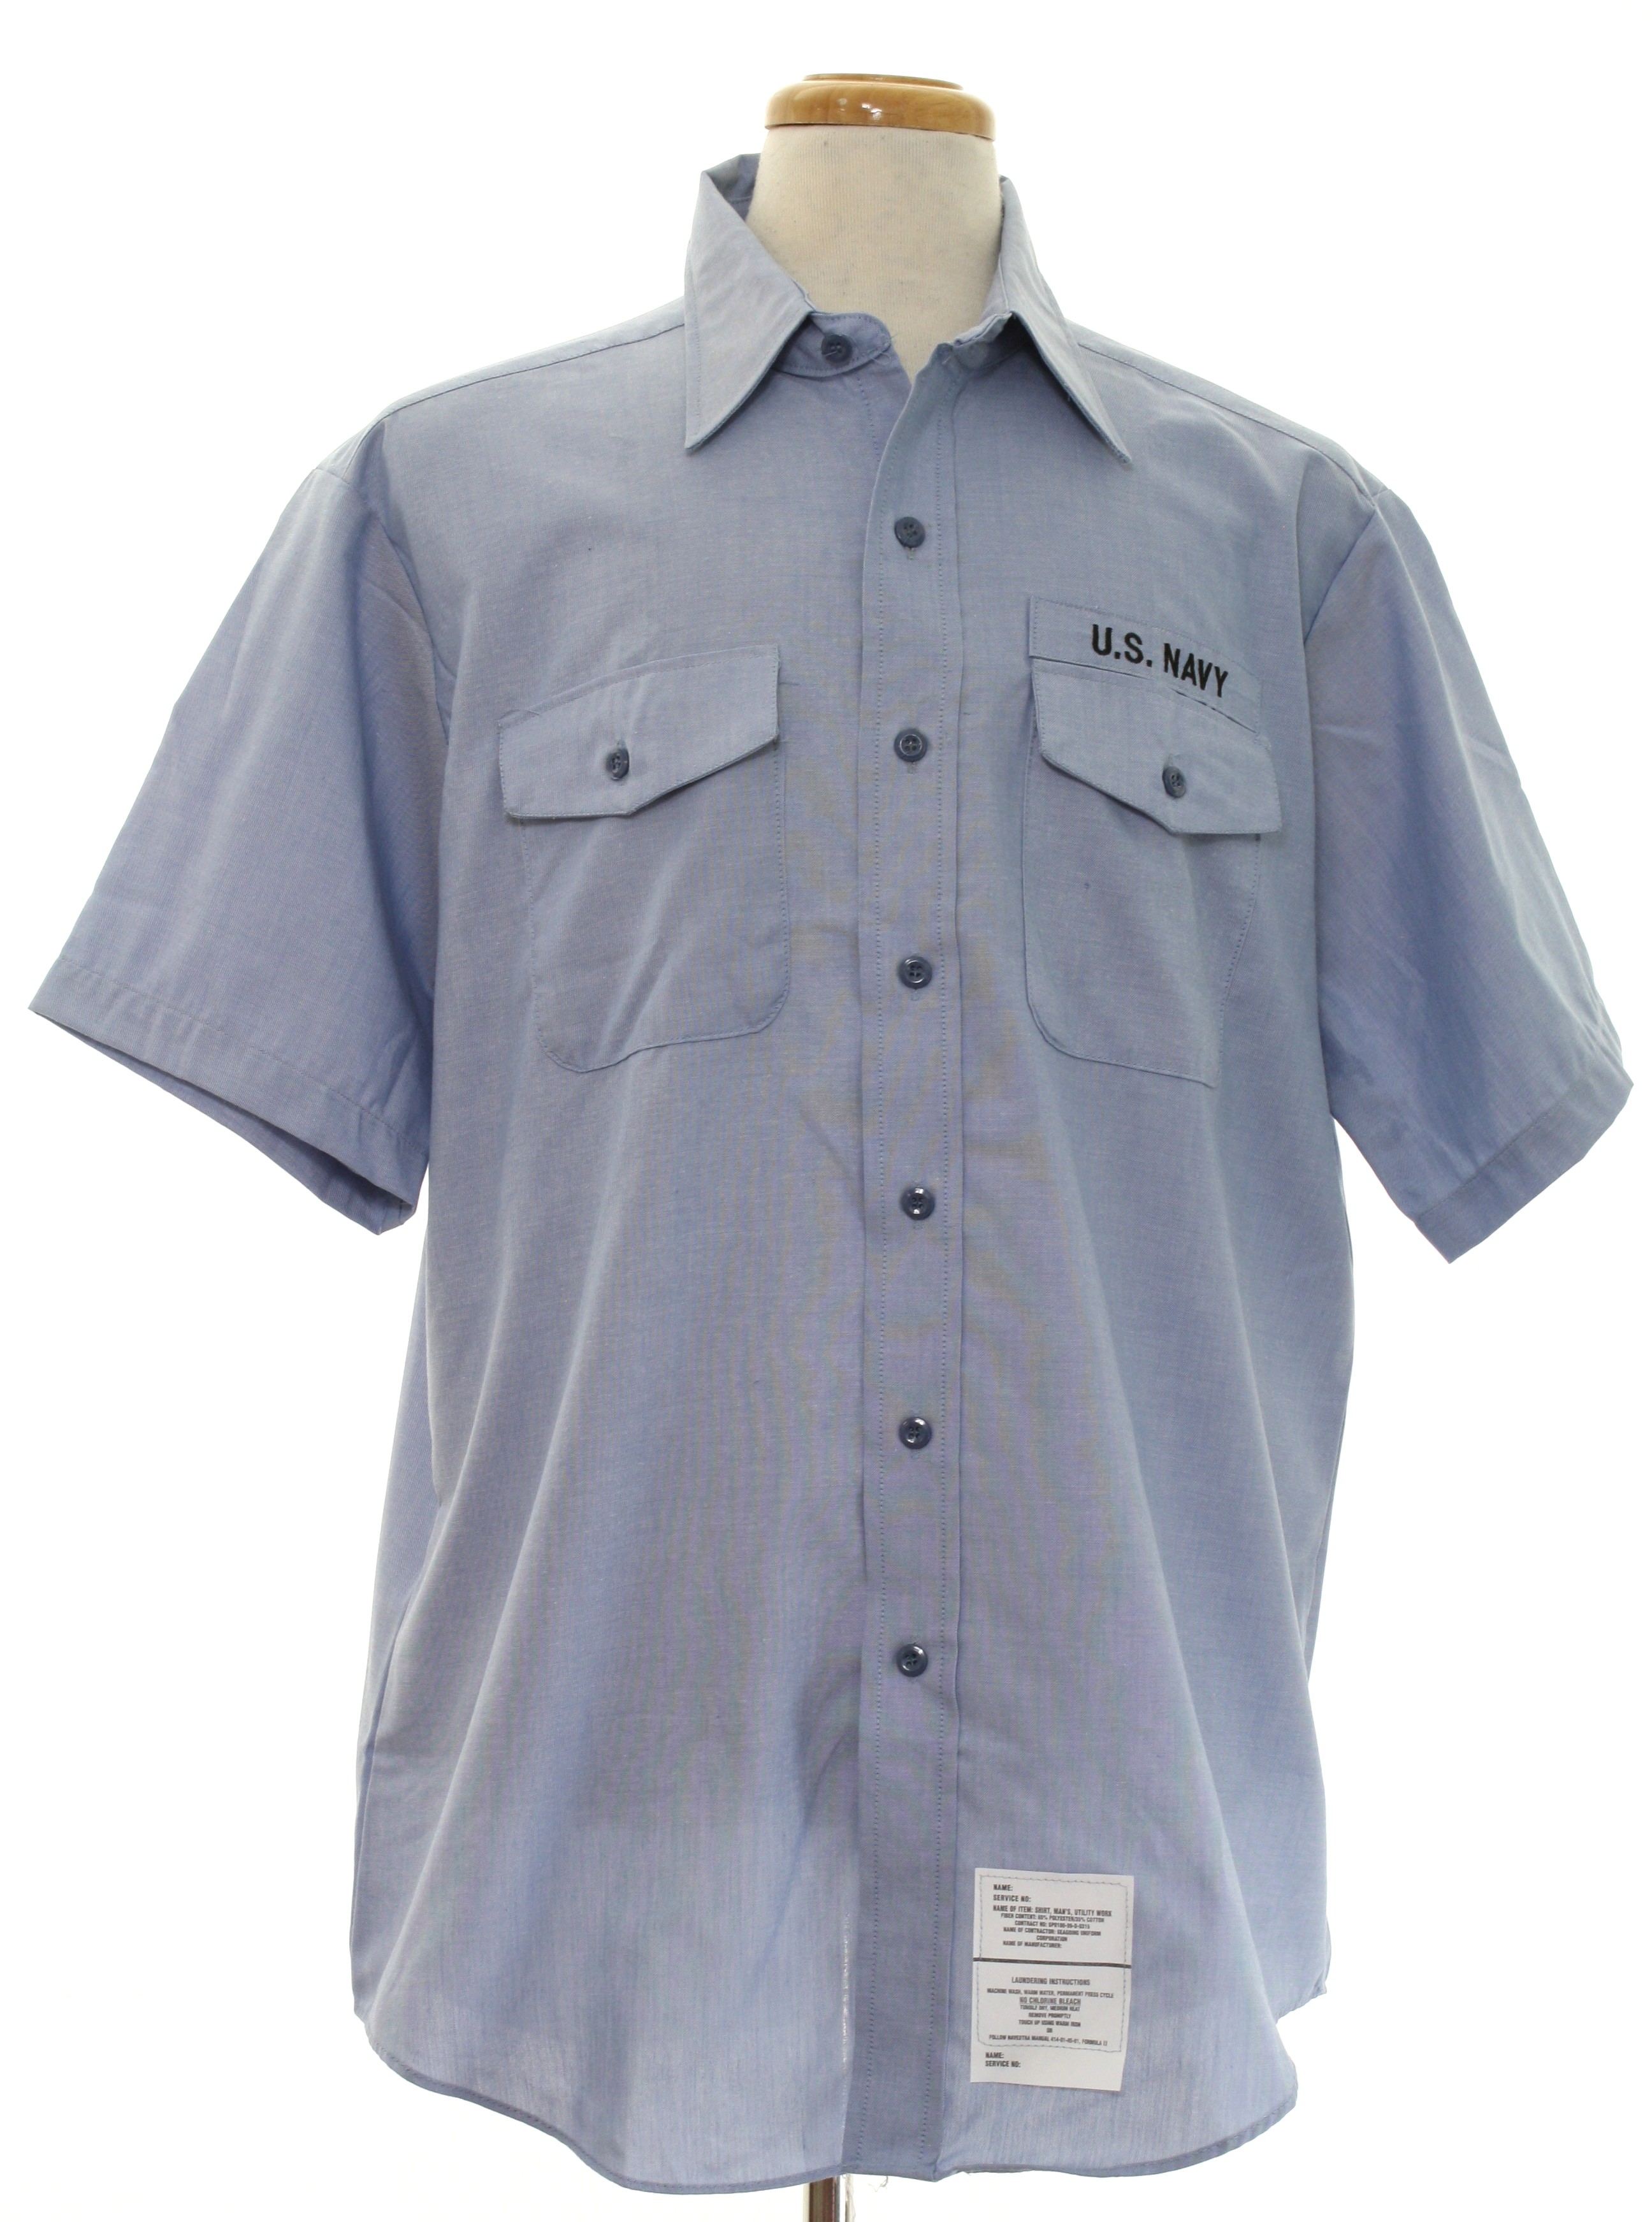 mens navy blue button up shirt